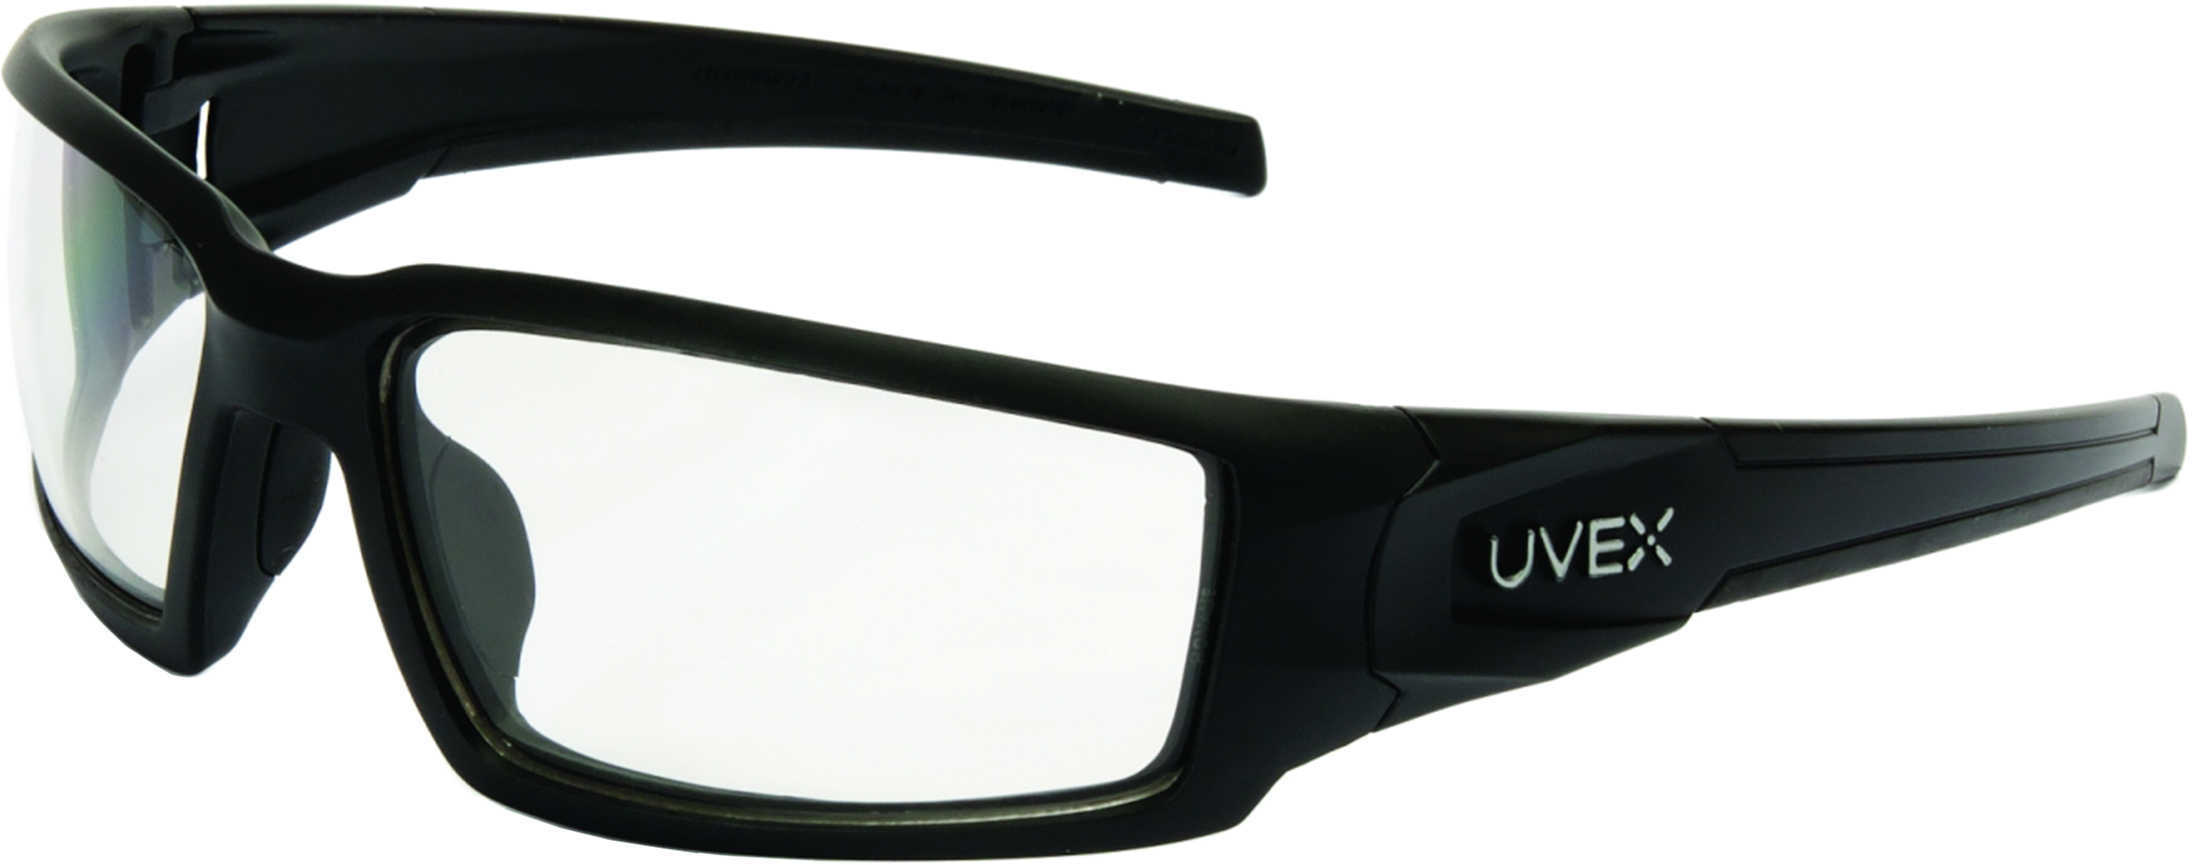 Howard LEIGHT HYPERSHOCK Glasses Black Frame/Clear Lens